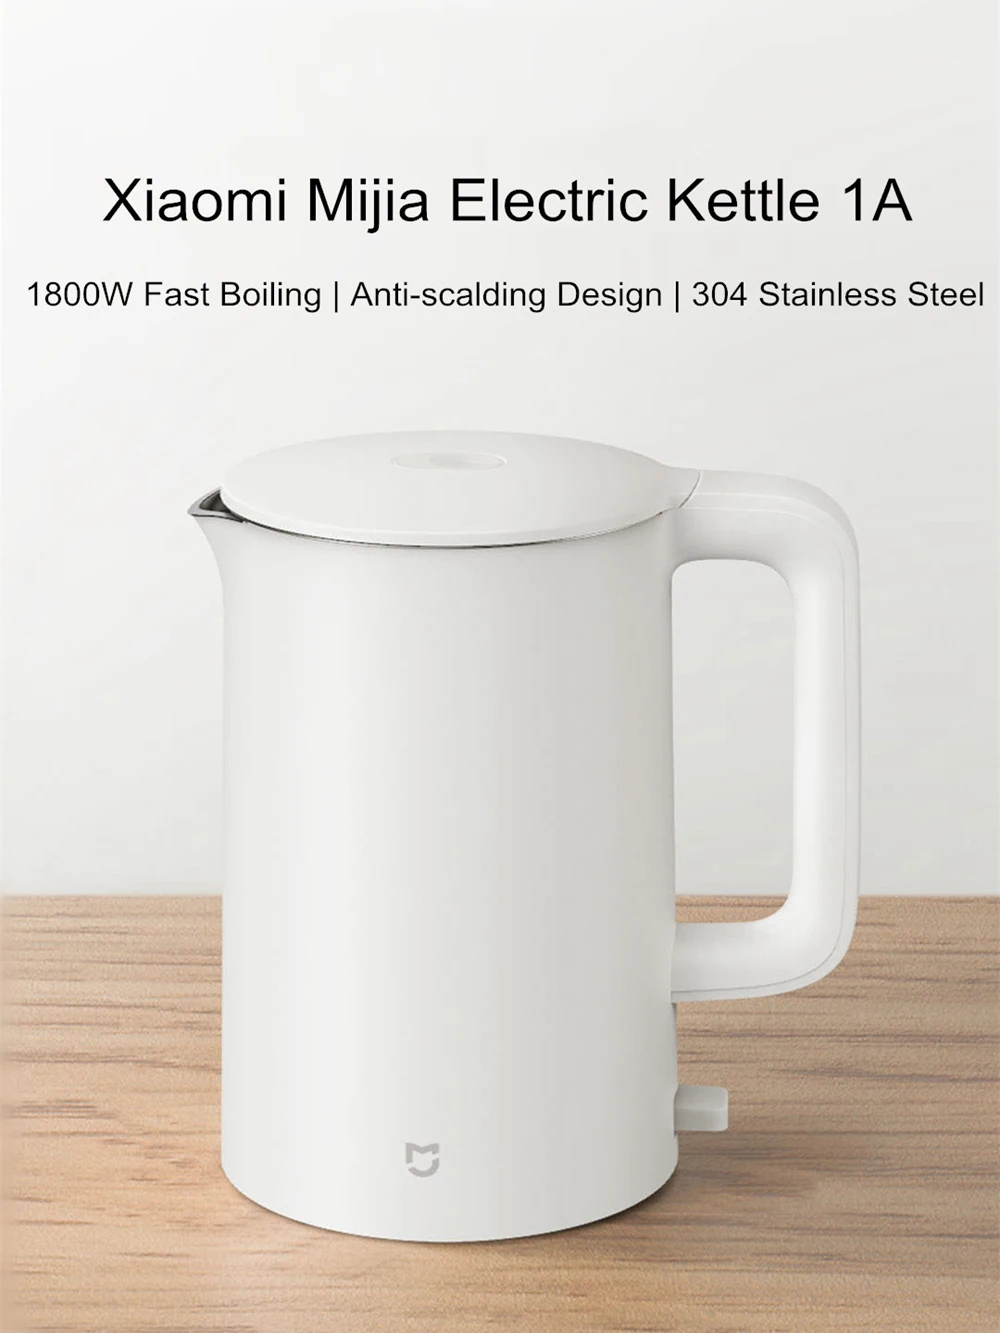 Xiaomi Ocooker Electric Kettle